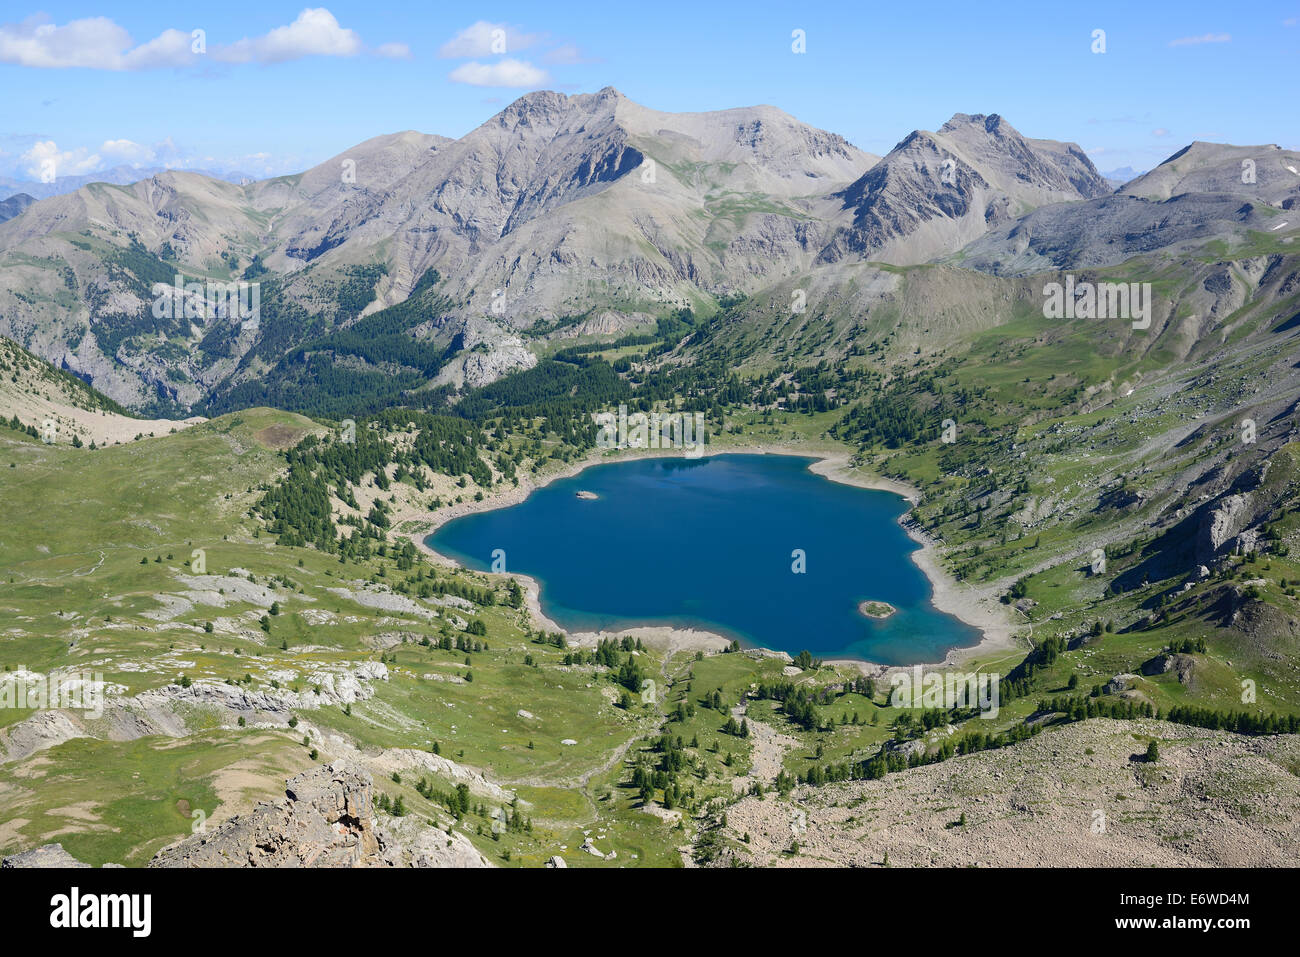 Il lago d'altitudine più alto dell'Europa occidentale a un'altitudine di 2228 metri s.l.m. Lago di Allos, Parco Nazionale del Mercantour, Alpi dell'alta Provenza, Francia. Foto Stock